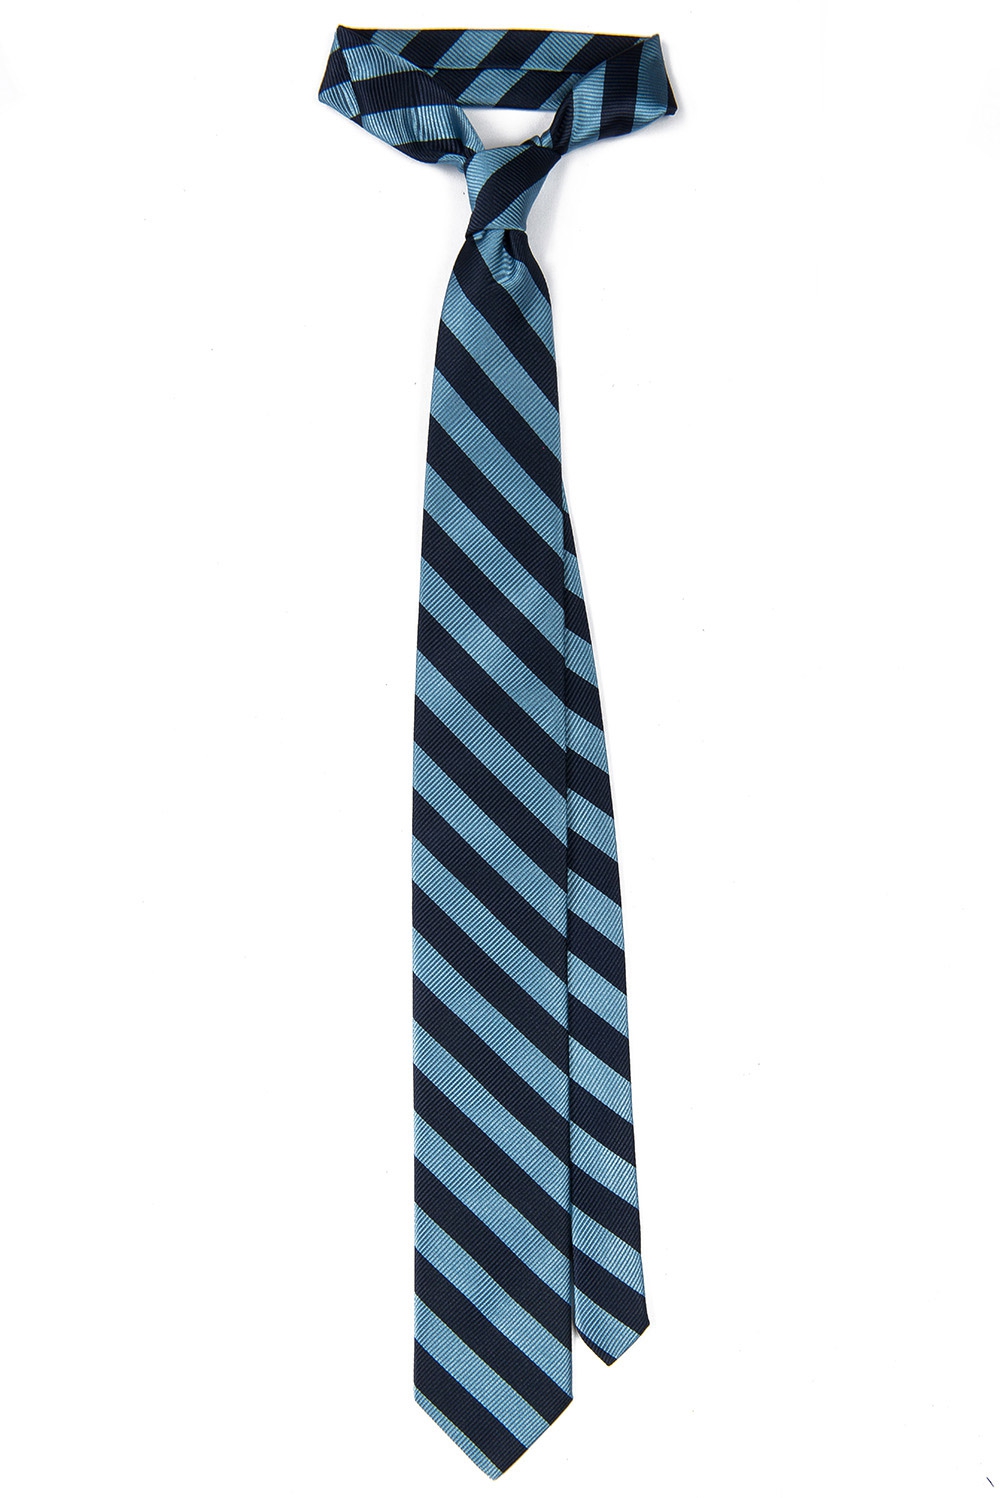 Cravata poliester bleumarin cu dungi 0